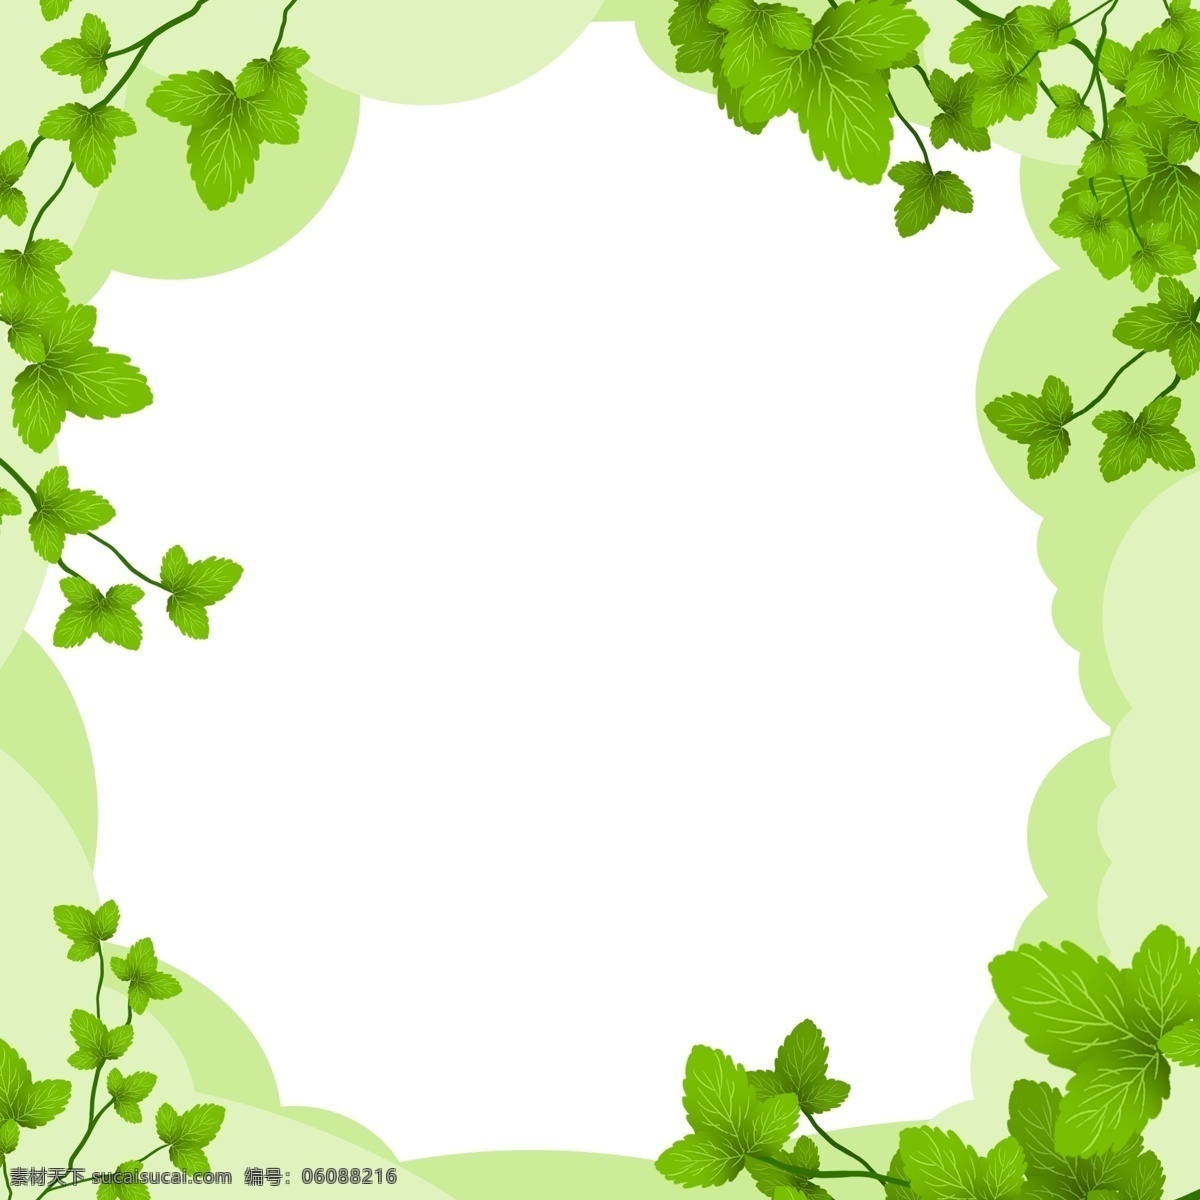 手绘 春季 绿叶 边框 绿色的叶子 绿色的植物 卡通边框 手绘春季边框 春季景色边框 漂亮的绿叶